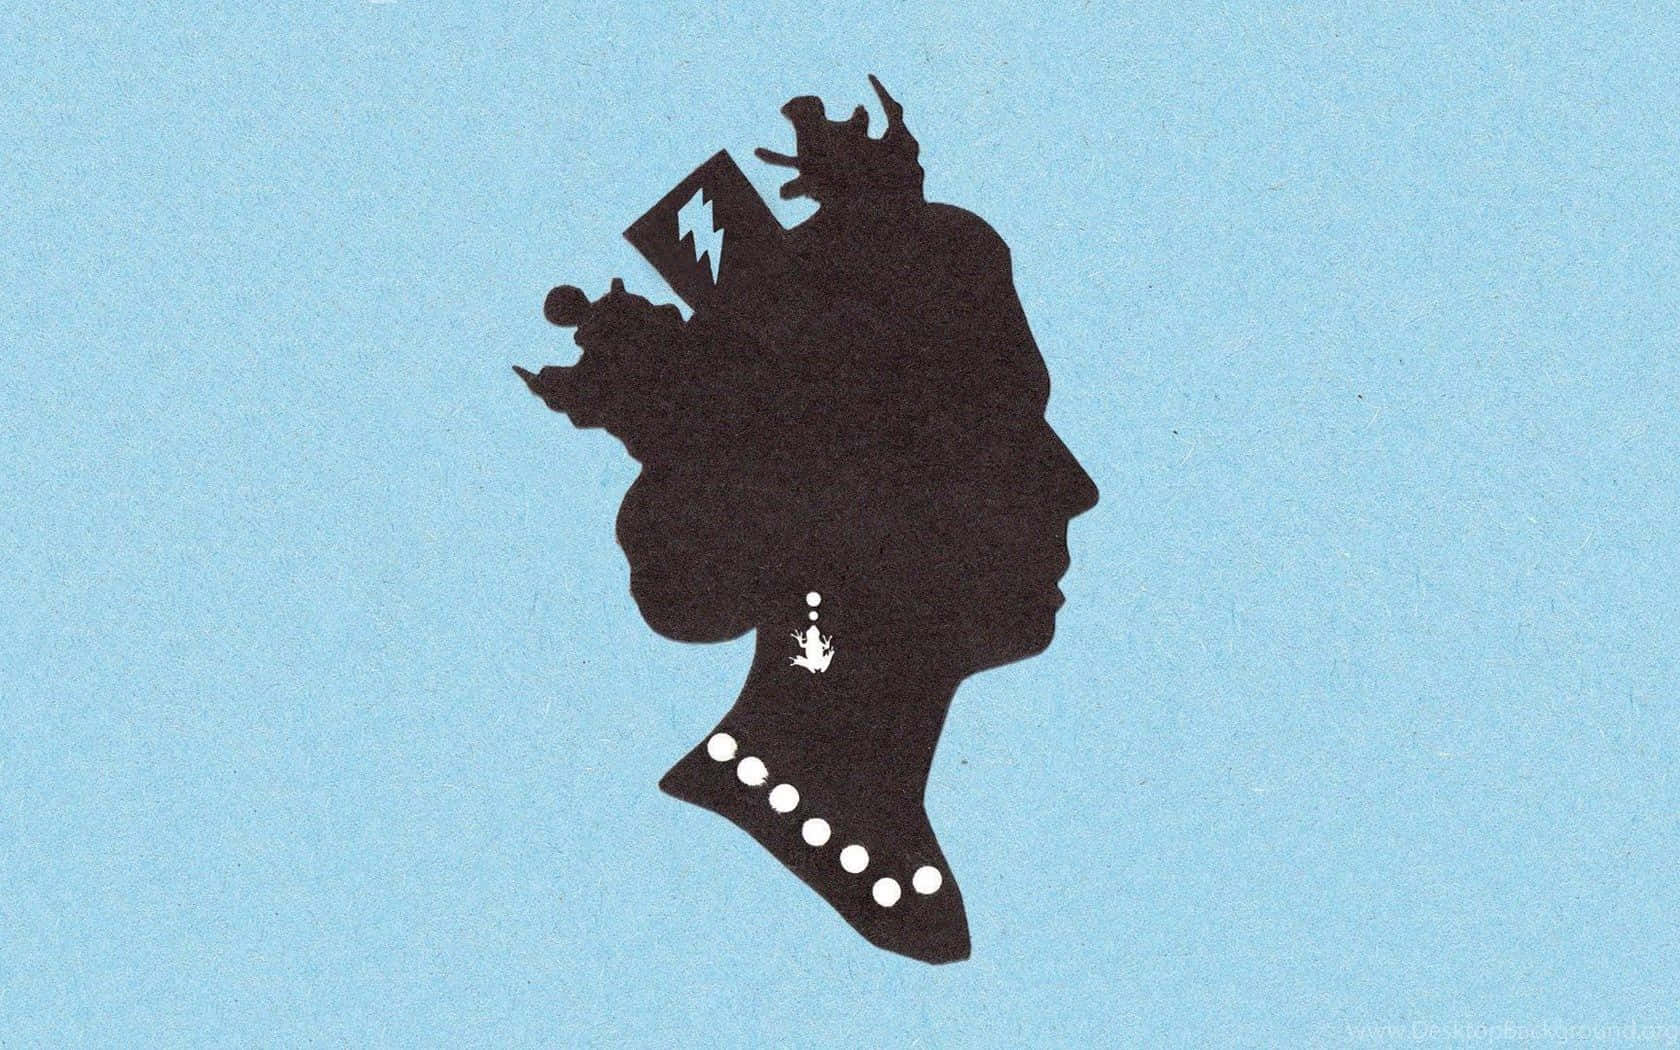 Queen Elizabeth Ii: A Reign Of Elegance